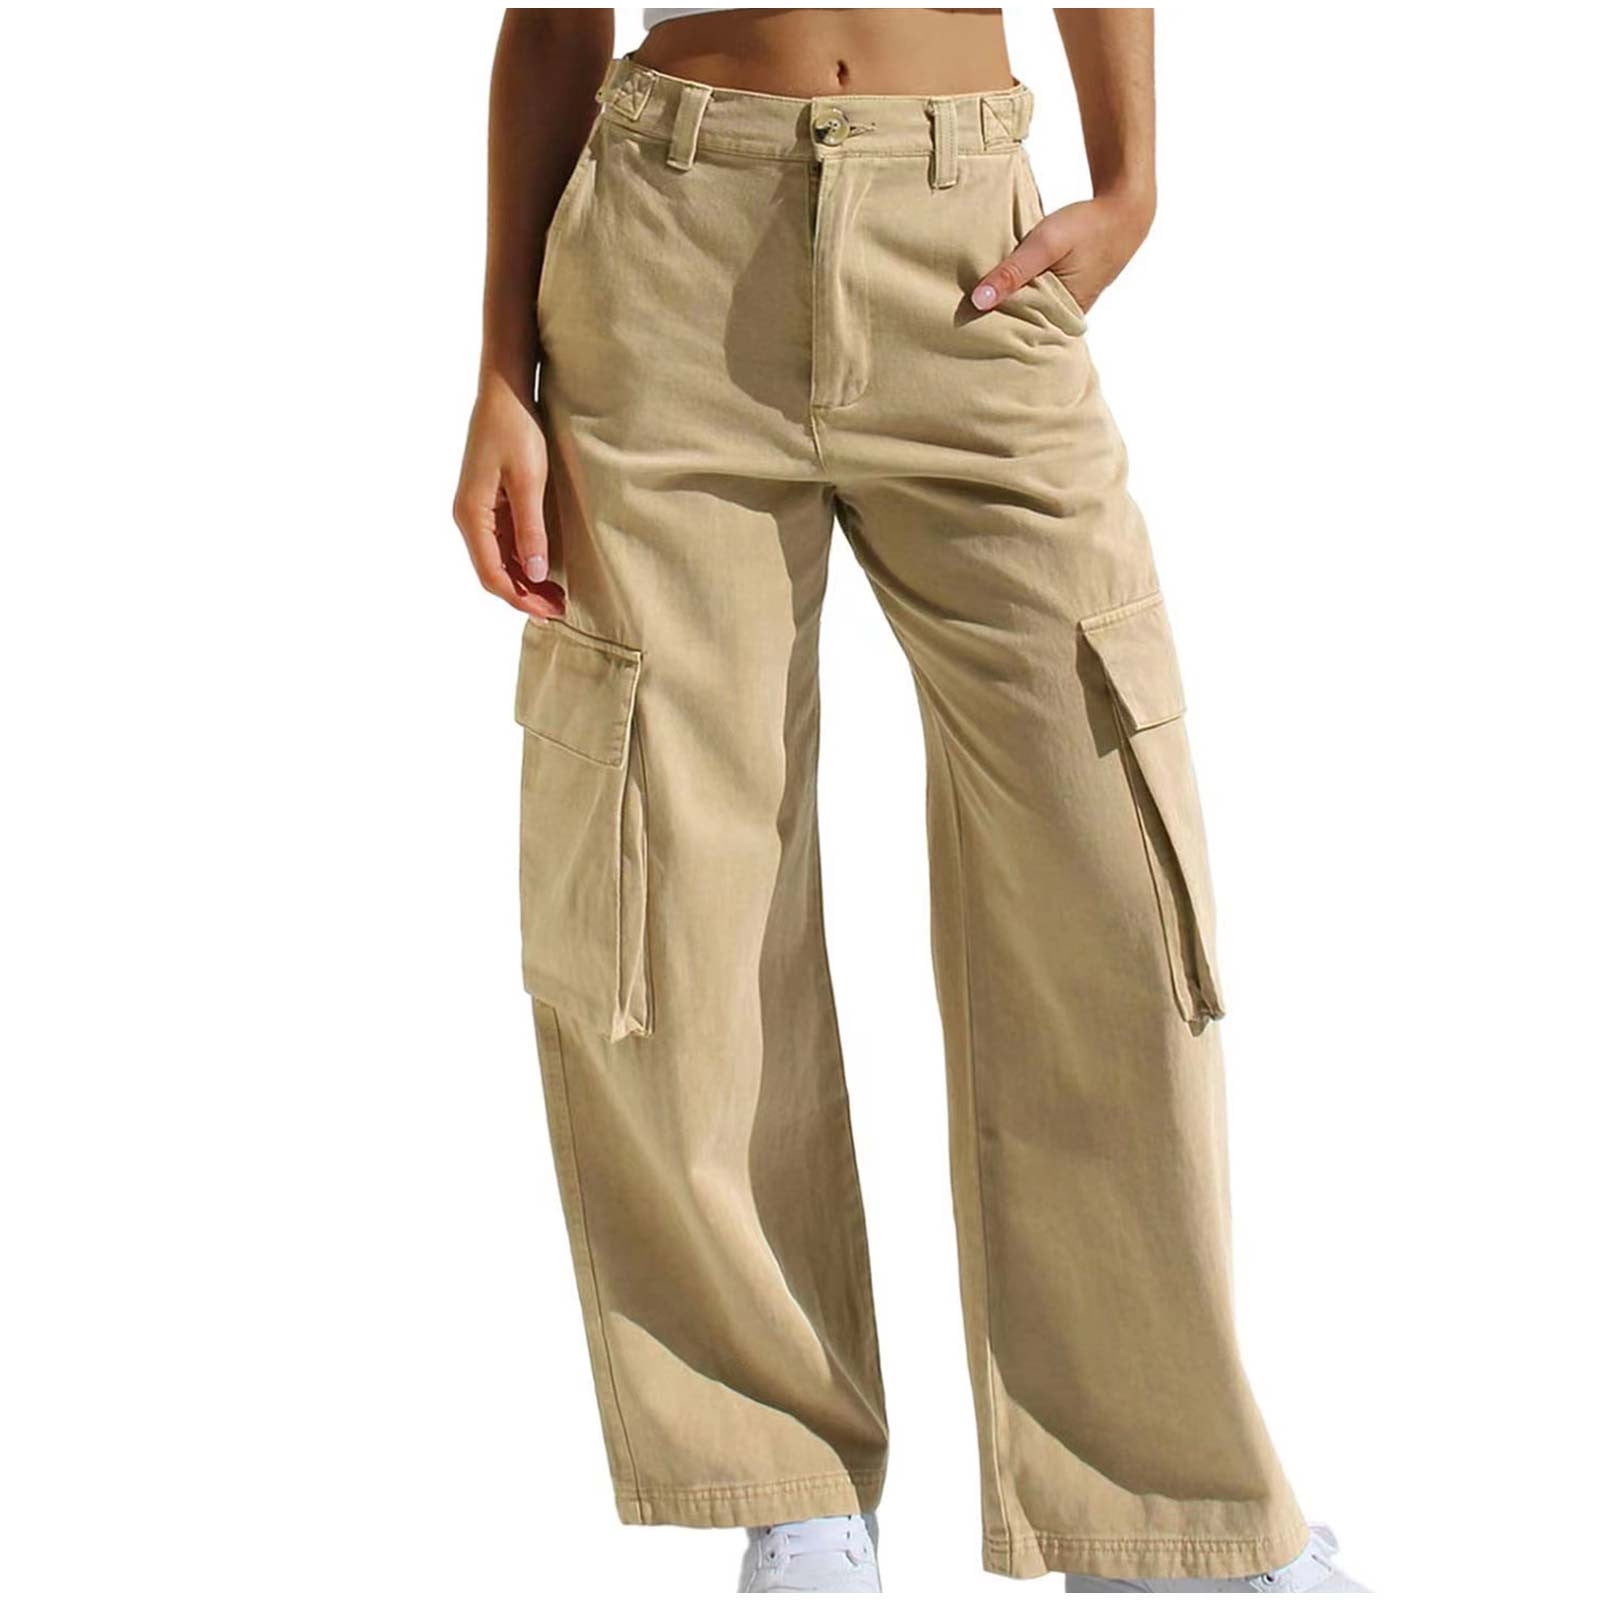 XFLWAM High Waist Stretch Cargo Pants Women Baggy Multiple Pockets